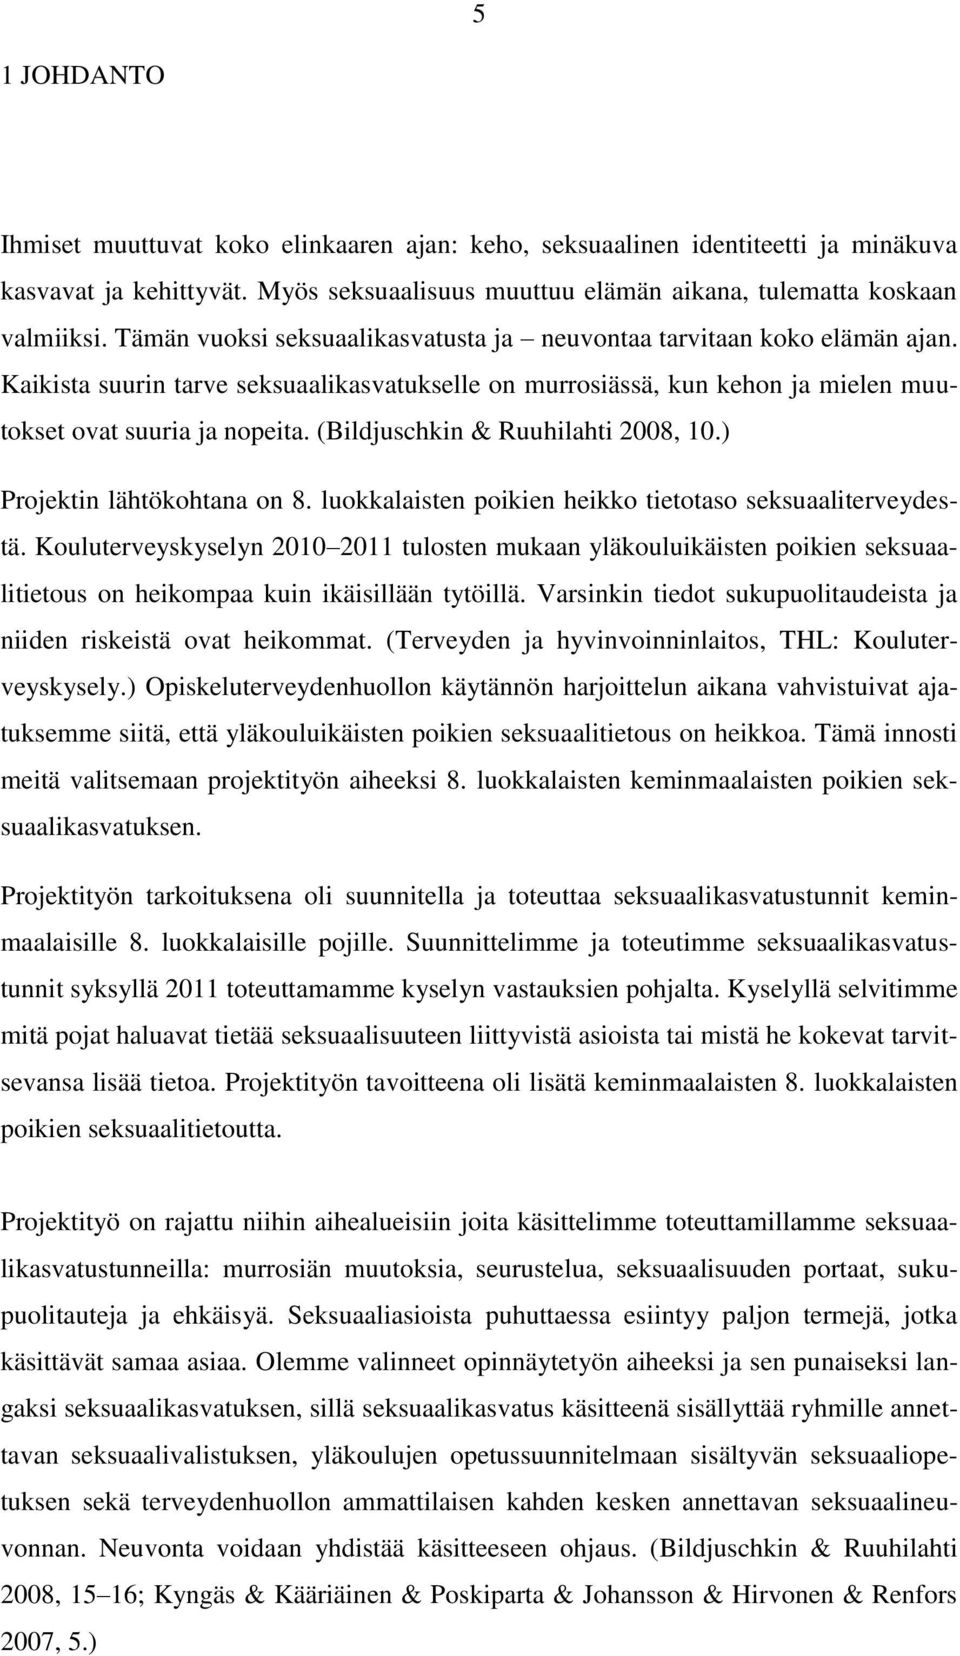 (Bildjuschkin & Ruuhilahti 2008, 10.) Projektin lähtökohtana on 8. luokkalaisten poikien heikko tietotaso seksuaaliterveydestä.